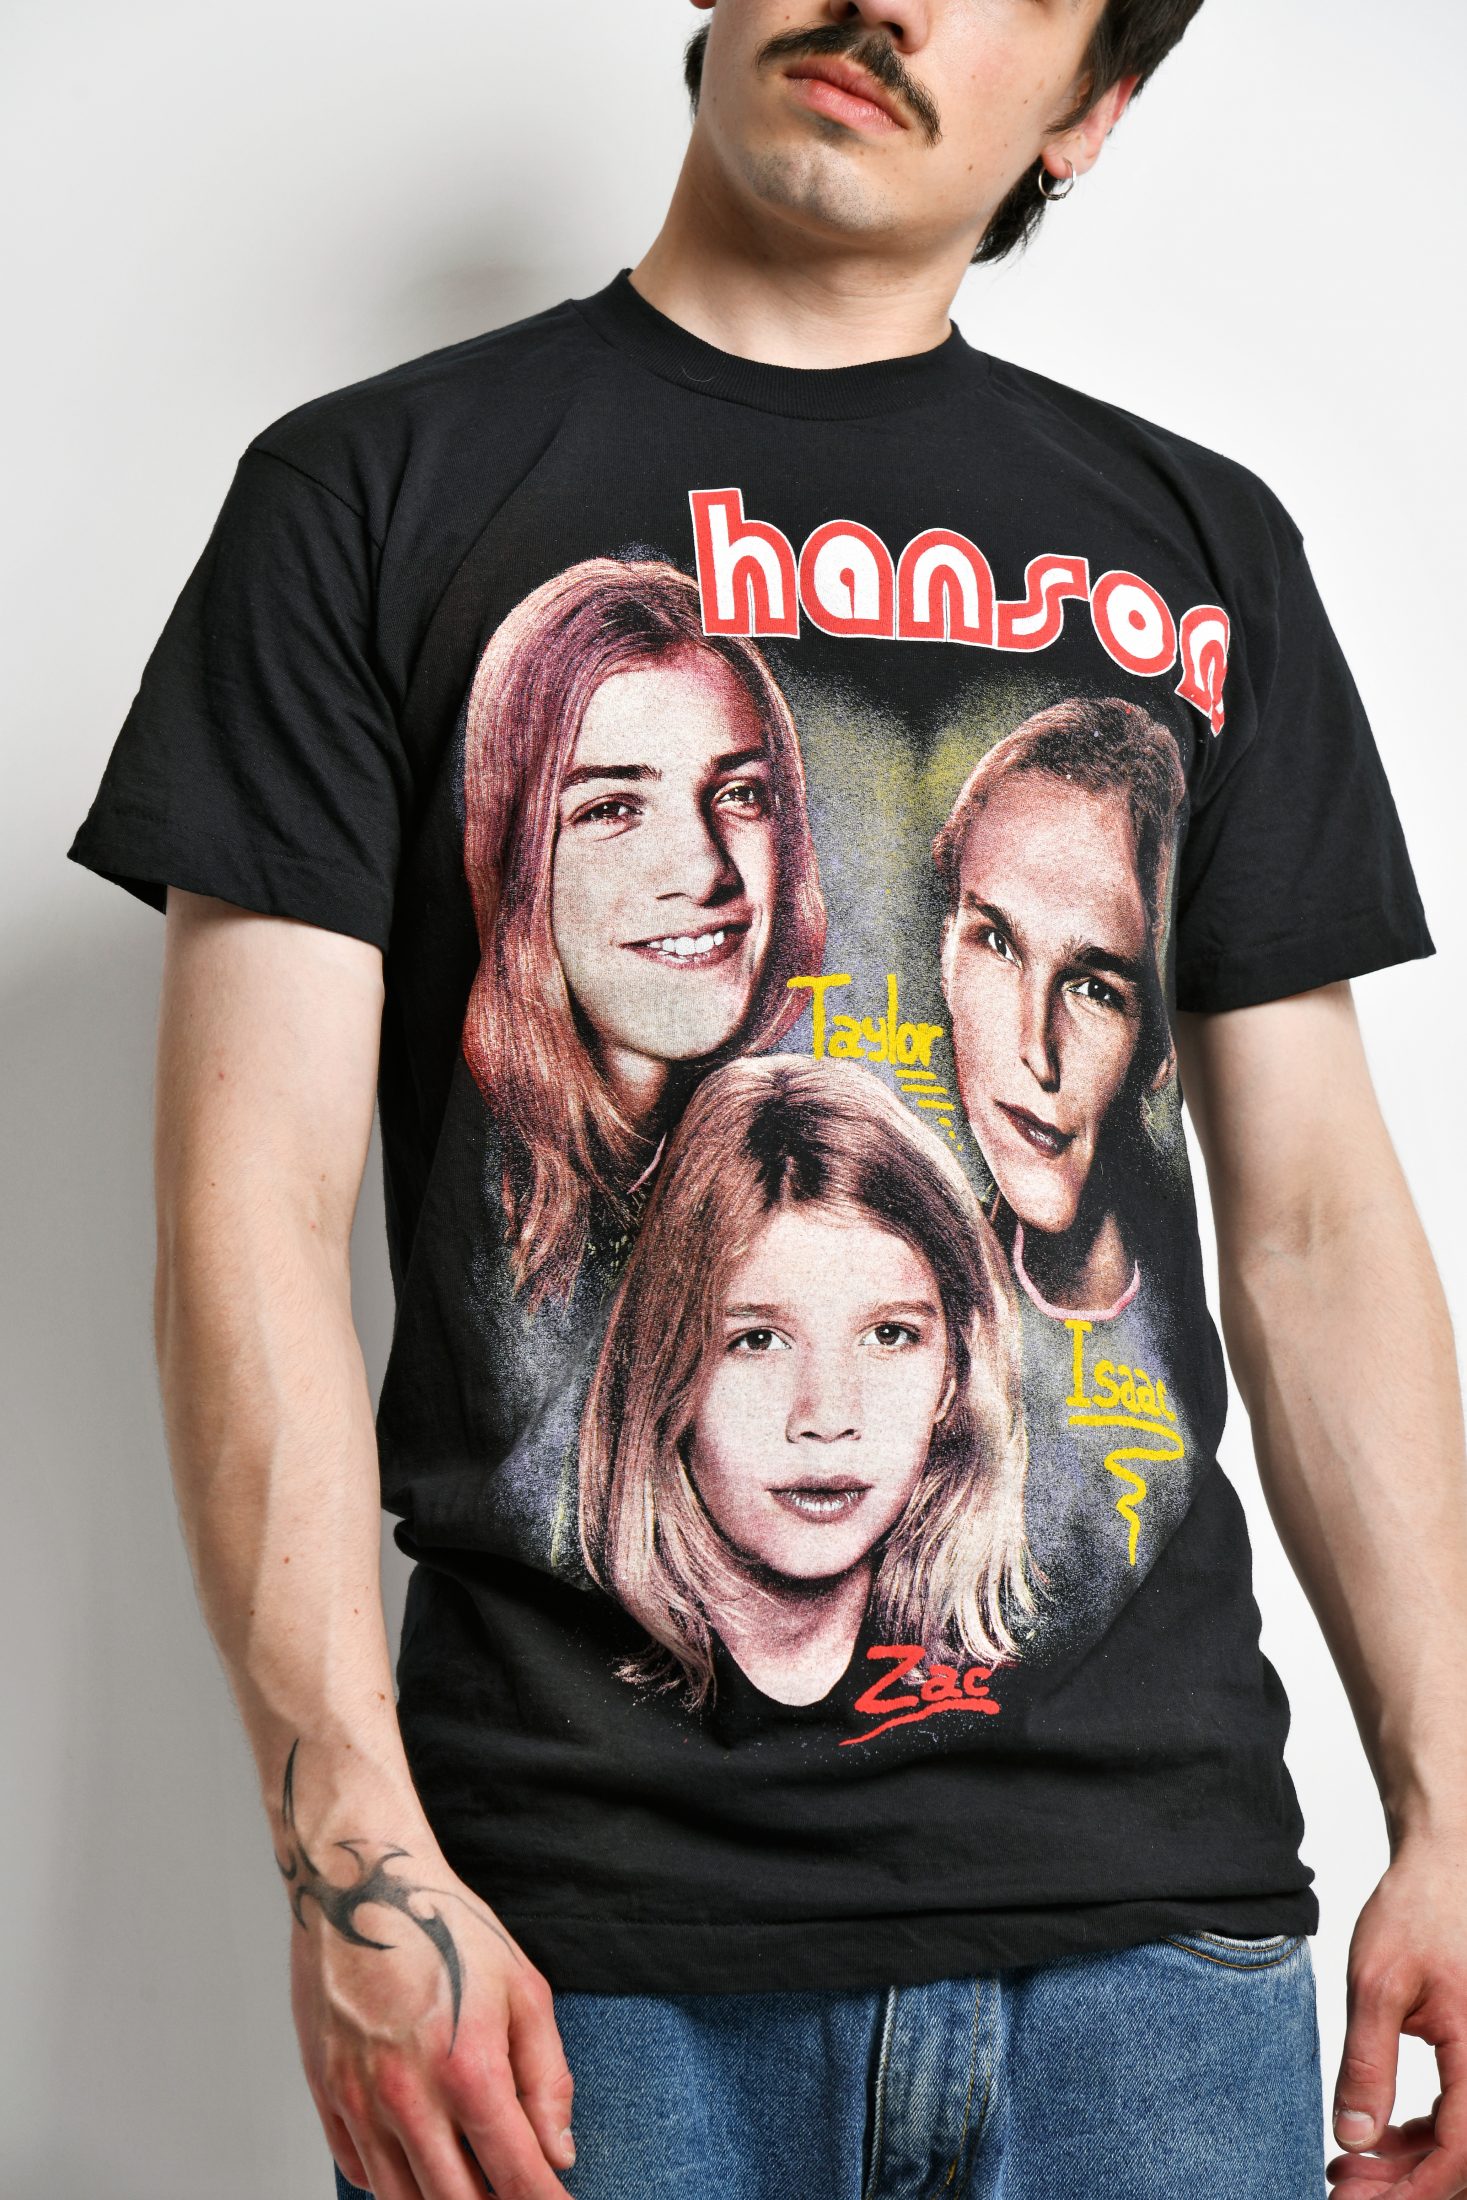 Hanson 90s music pop rock band t-shirt